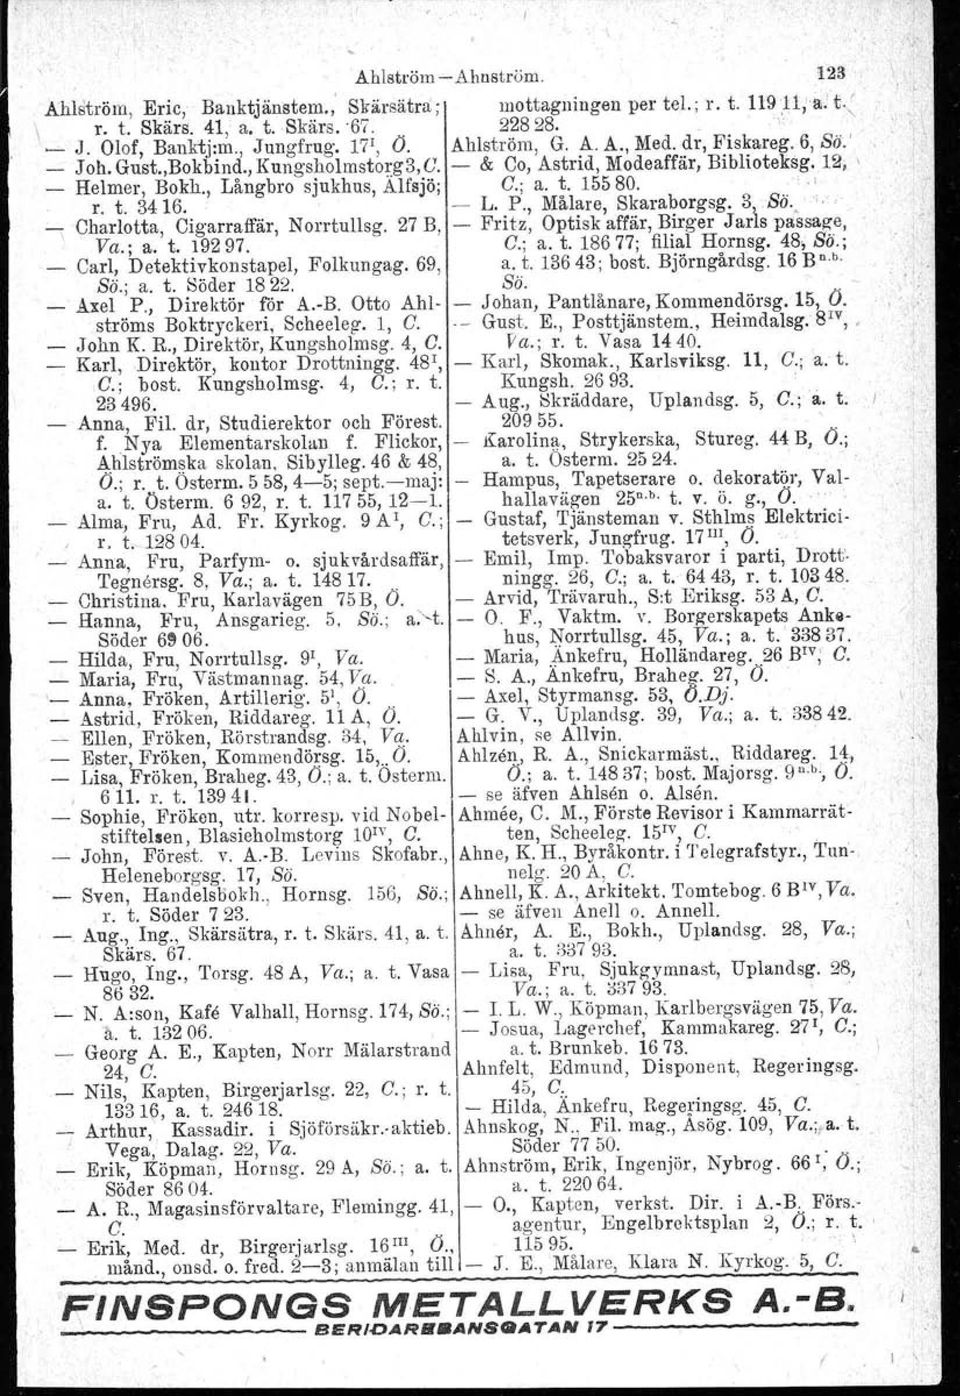 L. P., Målare, Skaraborgsg. 3 t Bä. "\ Charlotta, Cigarraffär, Norrtullsg. 27 B, Fritz, Optisk affär, Birger Jarls passage, Va.; a. t. 19297. G.; a. t.18677; filial Hornsg. 48, So.